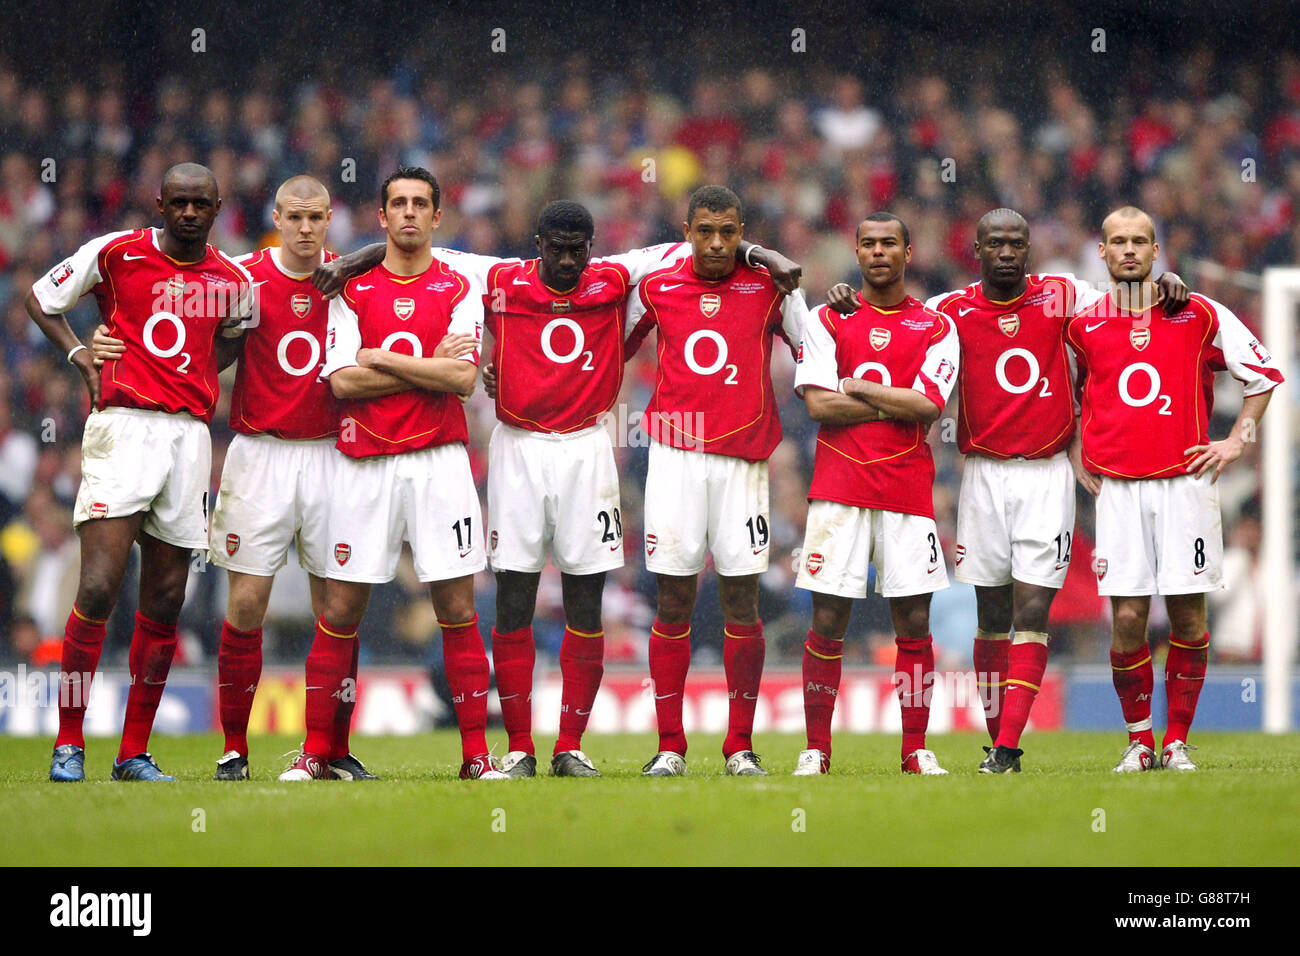 Calcio - fa Cup - finale - Arsenal / Manchester United - Millennium Stadium. I giocatori dell'Arsenal collegano le armi durante il tiro di pena fuori Foto Stock